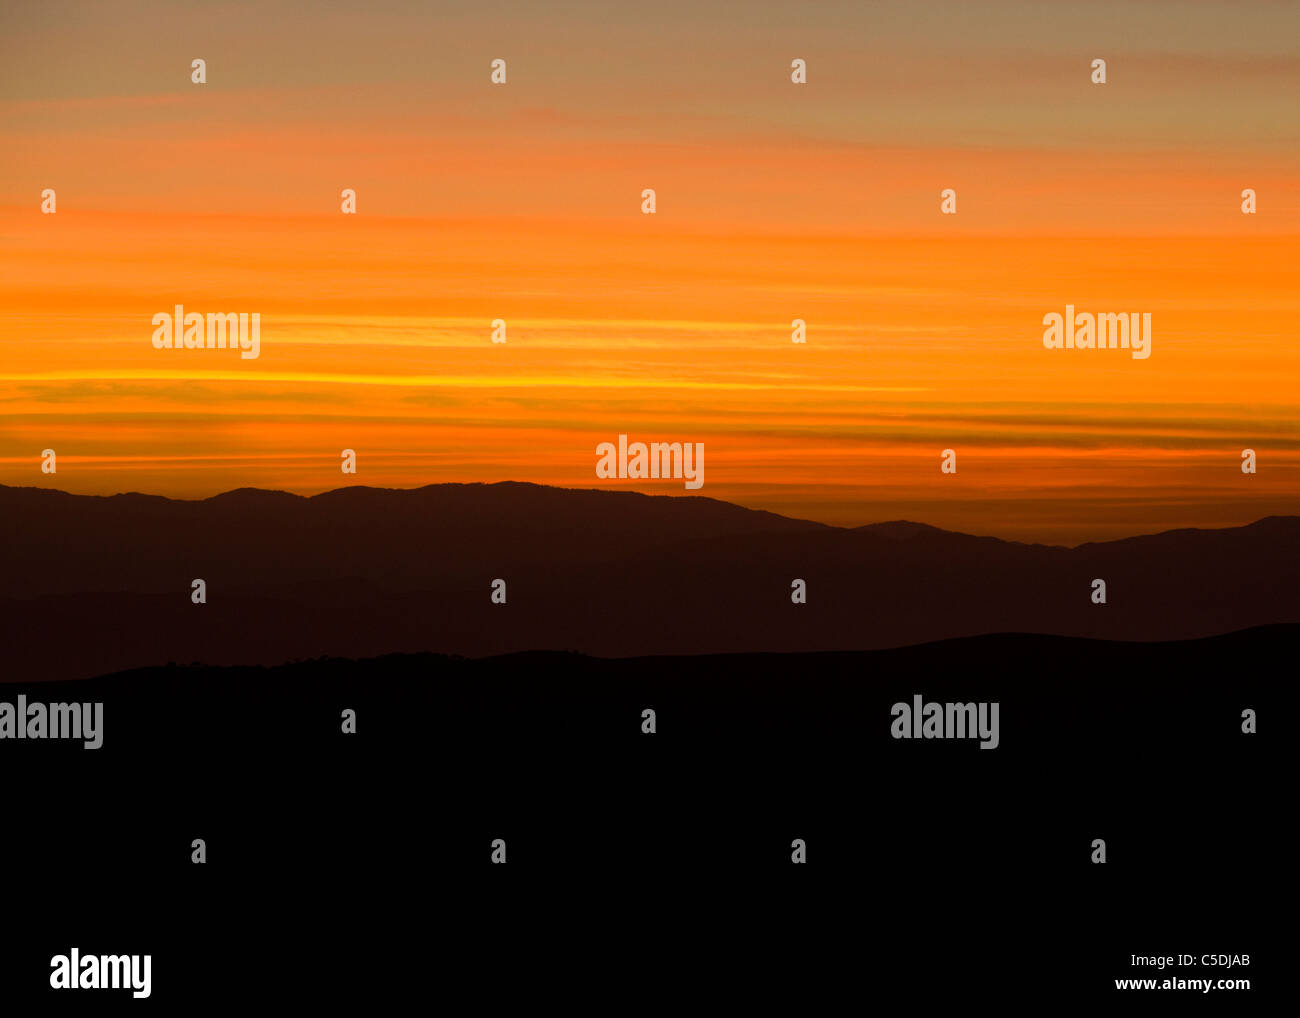 Soleil se couche derrière les montagnes du désert du sud-ouest de l'Amérique du Nord - California USA Banque D'Images